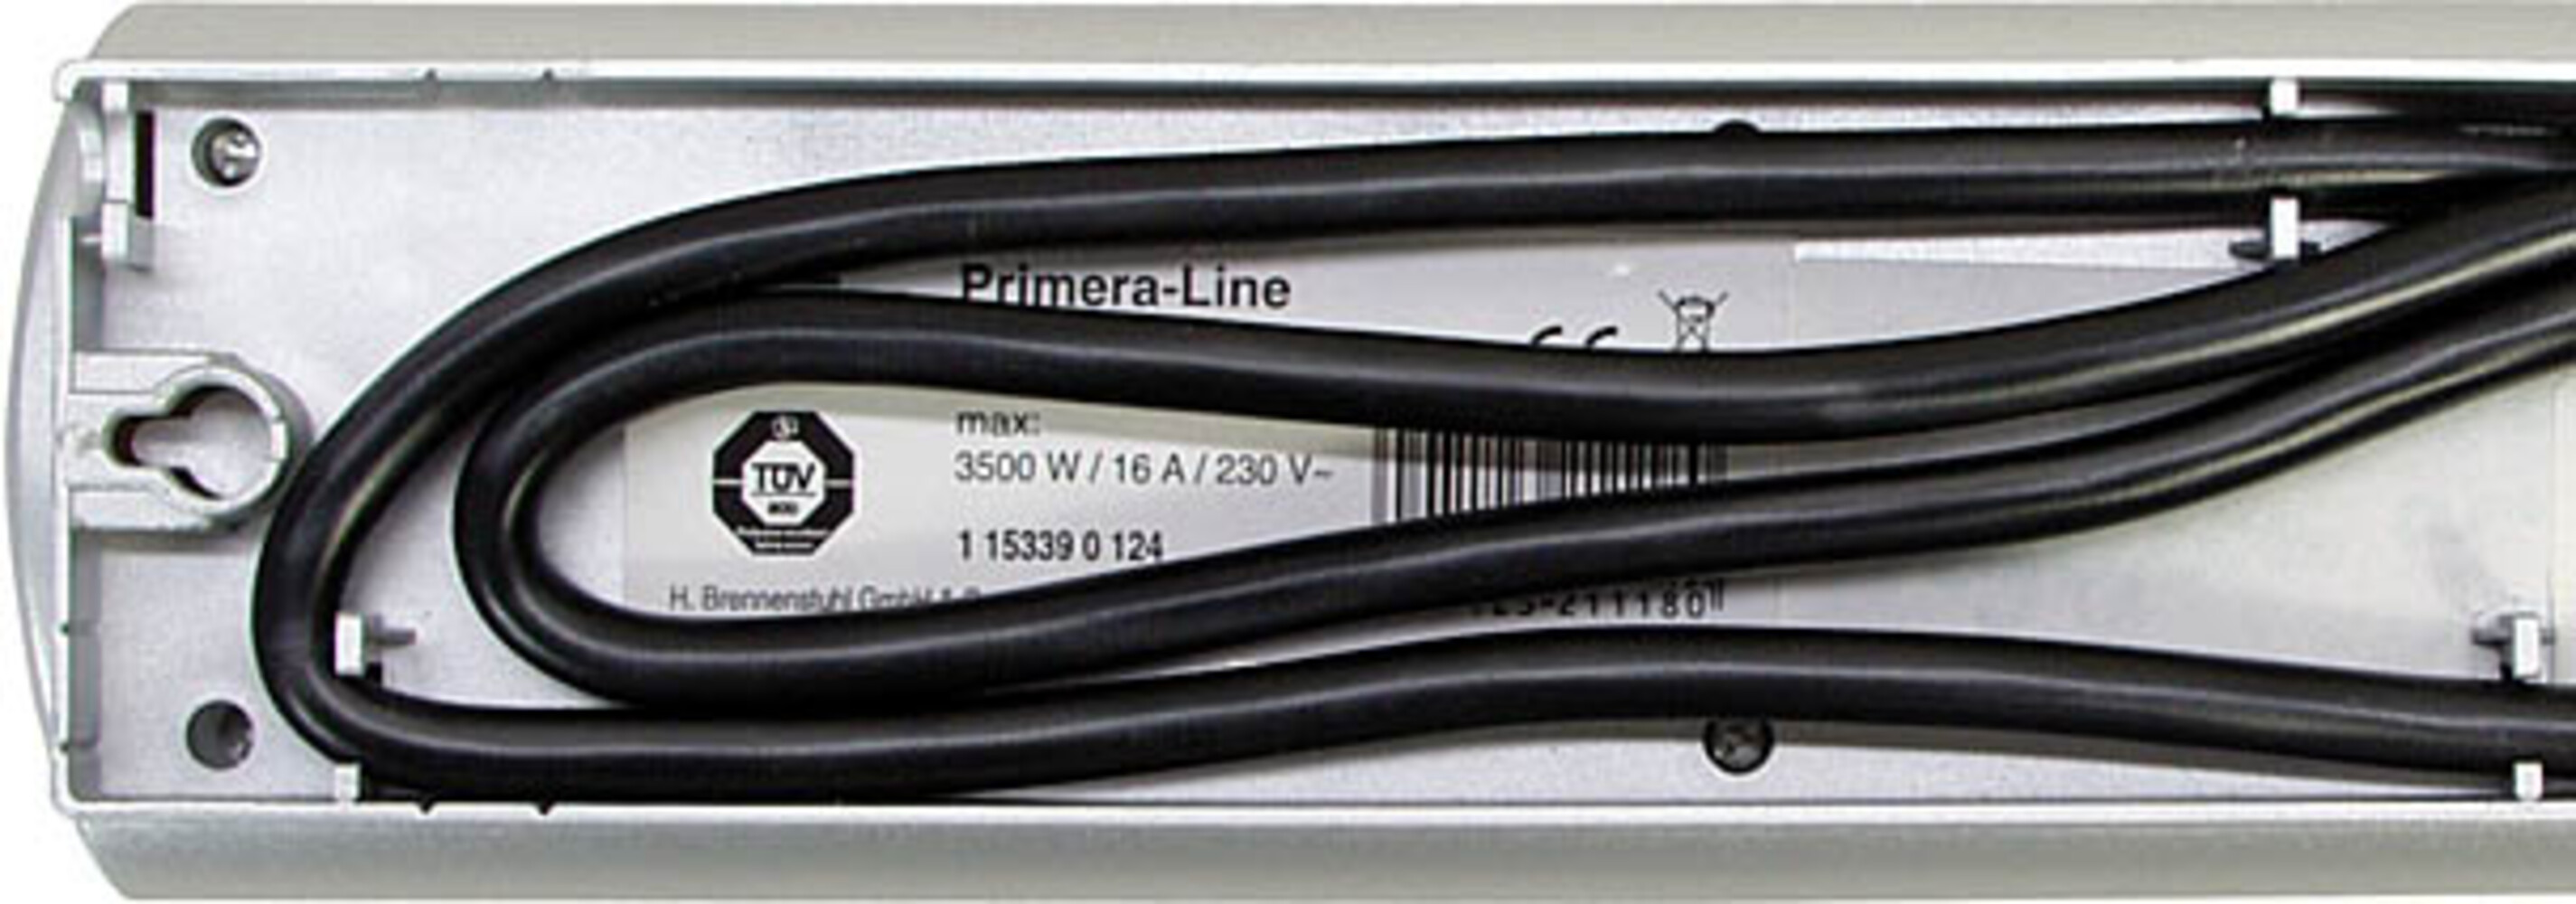 Hochwertiges Anschlusskabel und Stecker für Brennenstuhl Primera Line Steckdosenleiste - 10-fach schaltbar - 2m Zuleitung - silber